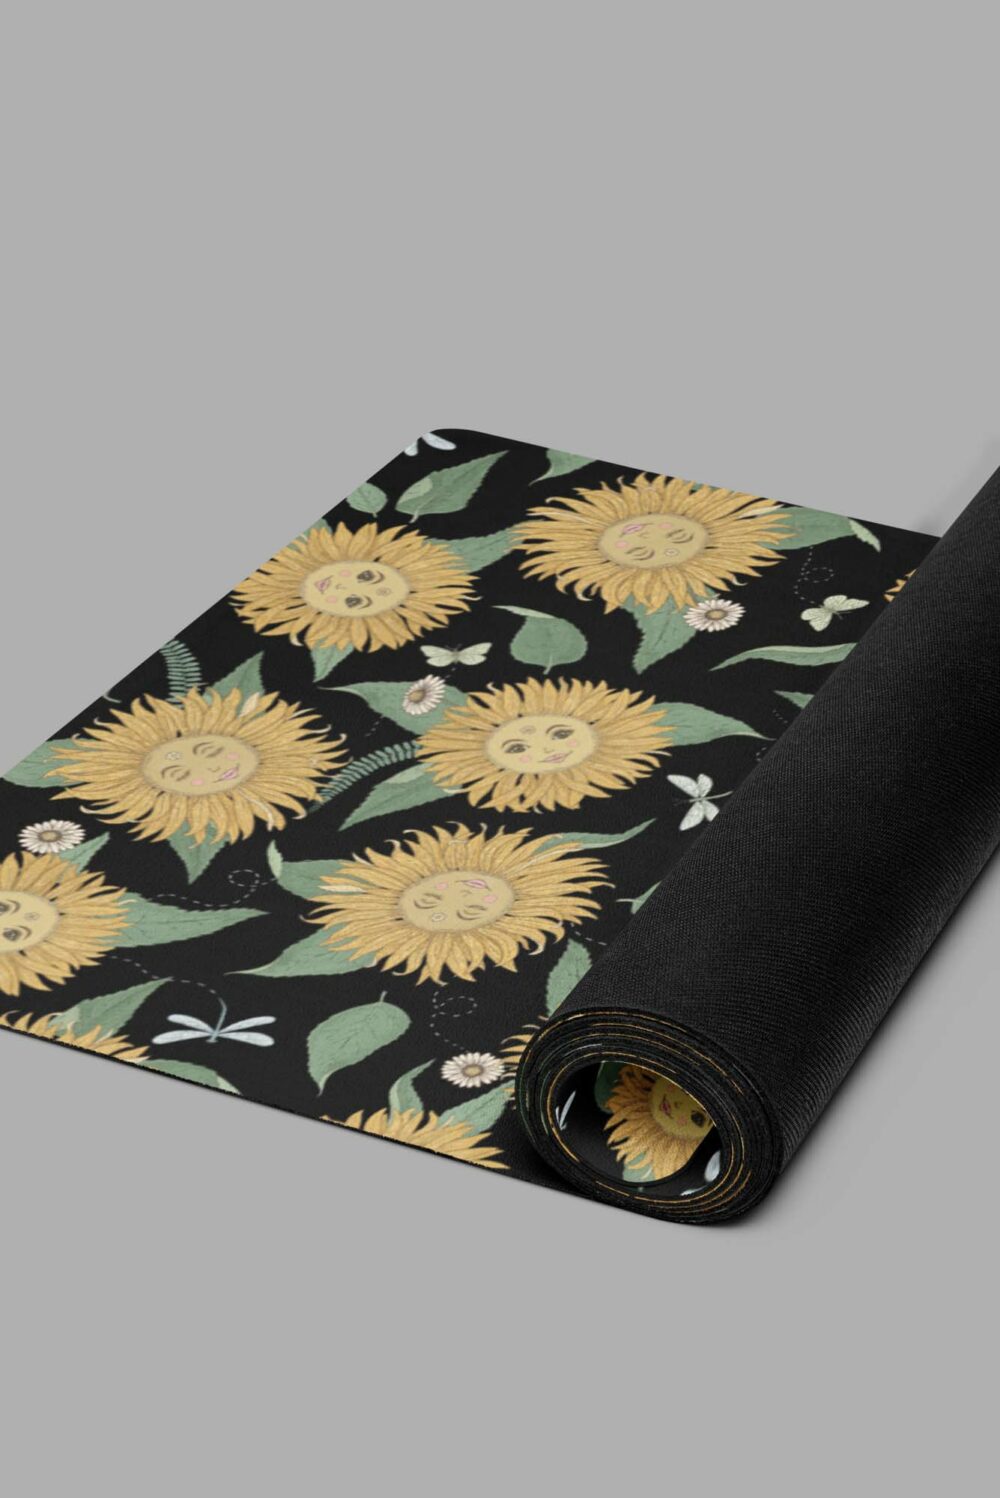 cosmic drifters sunflower daze print yoga mat rolled